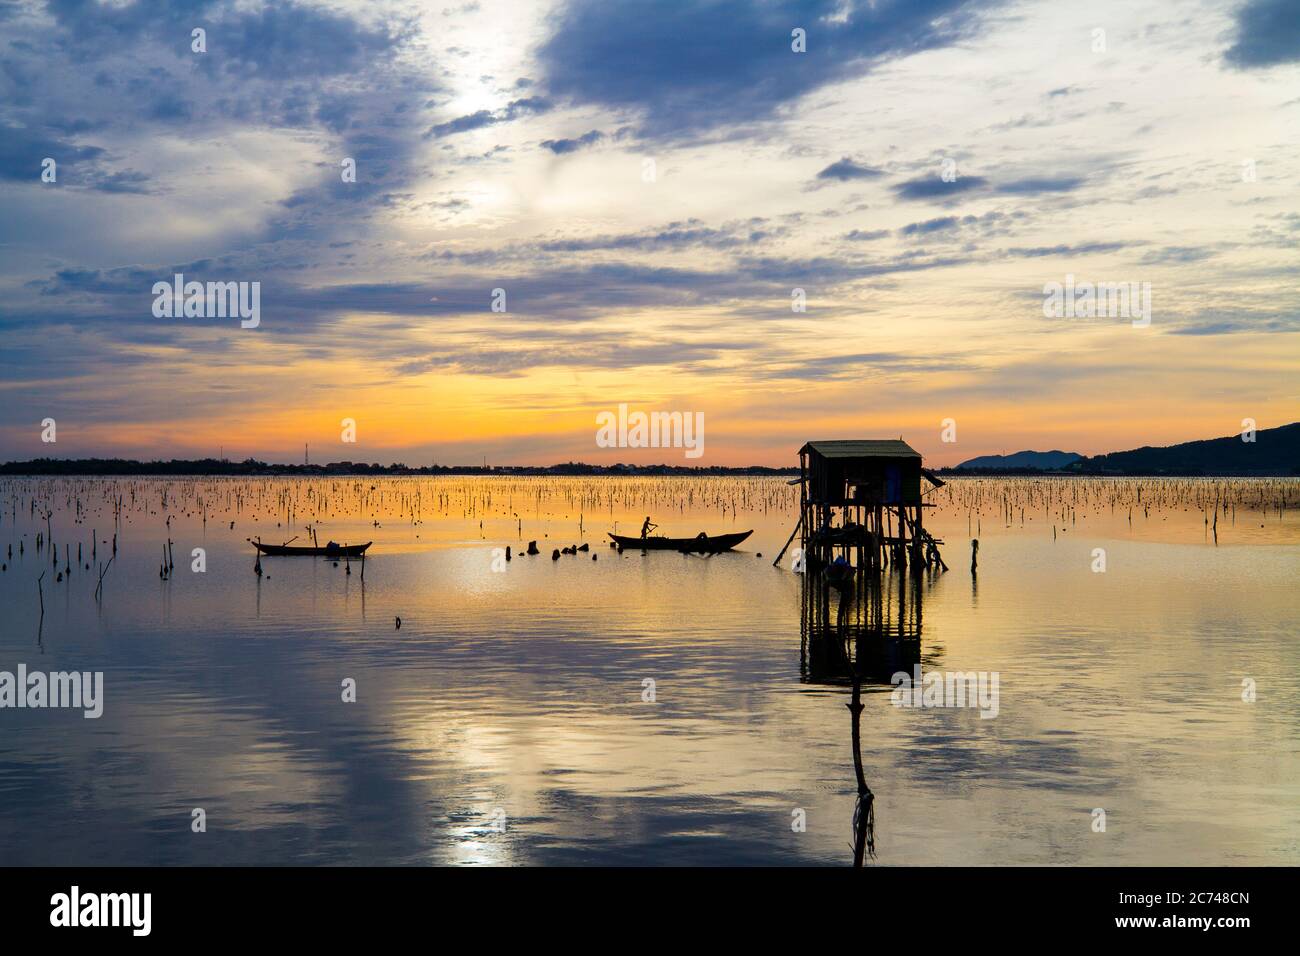 Paysage merveilleux à Lap an Lagoon, Vietnam avec la maison flottante, bateau en bois et ciel coloré étonnant de lever du soleil. Banque D'Images